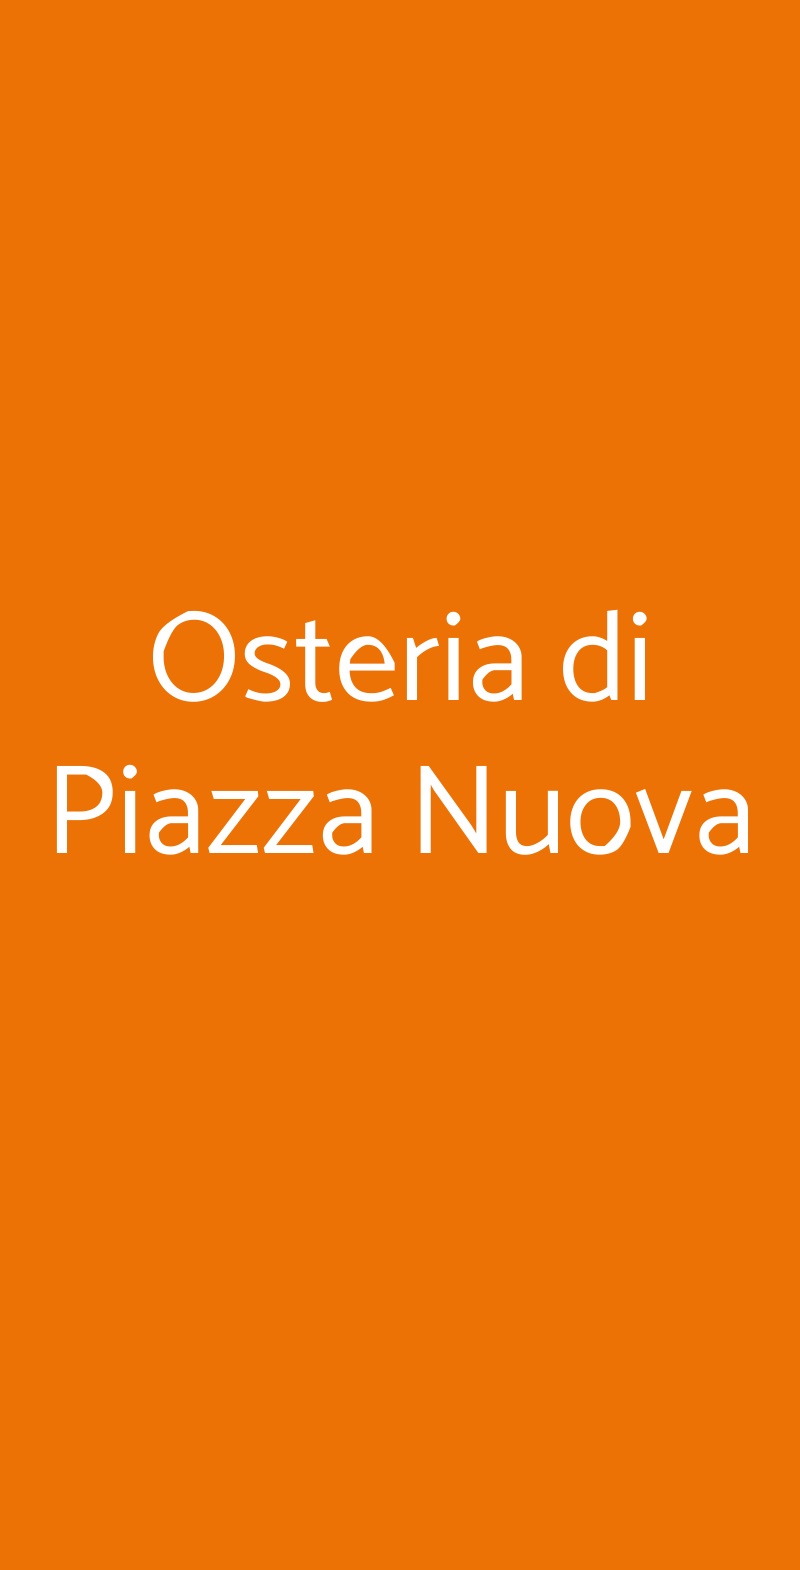 Osteria di Piazza Nuova Bagnacavallo menù 1 pagina